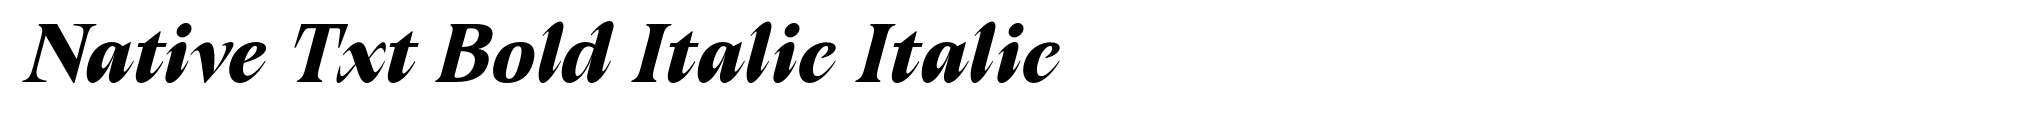 Native Txt Bold Italic Italic image